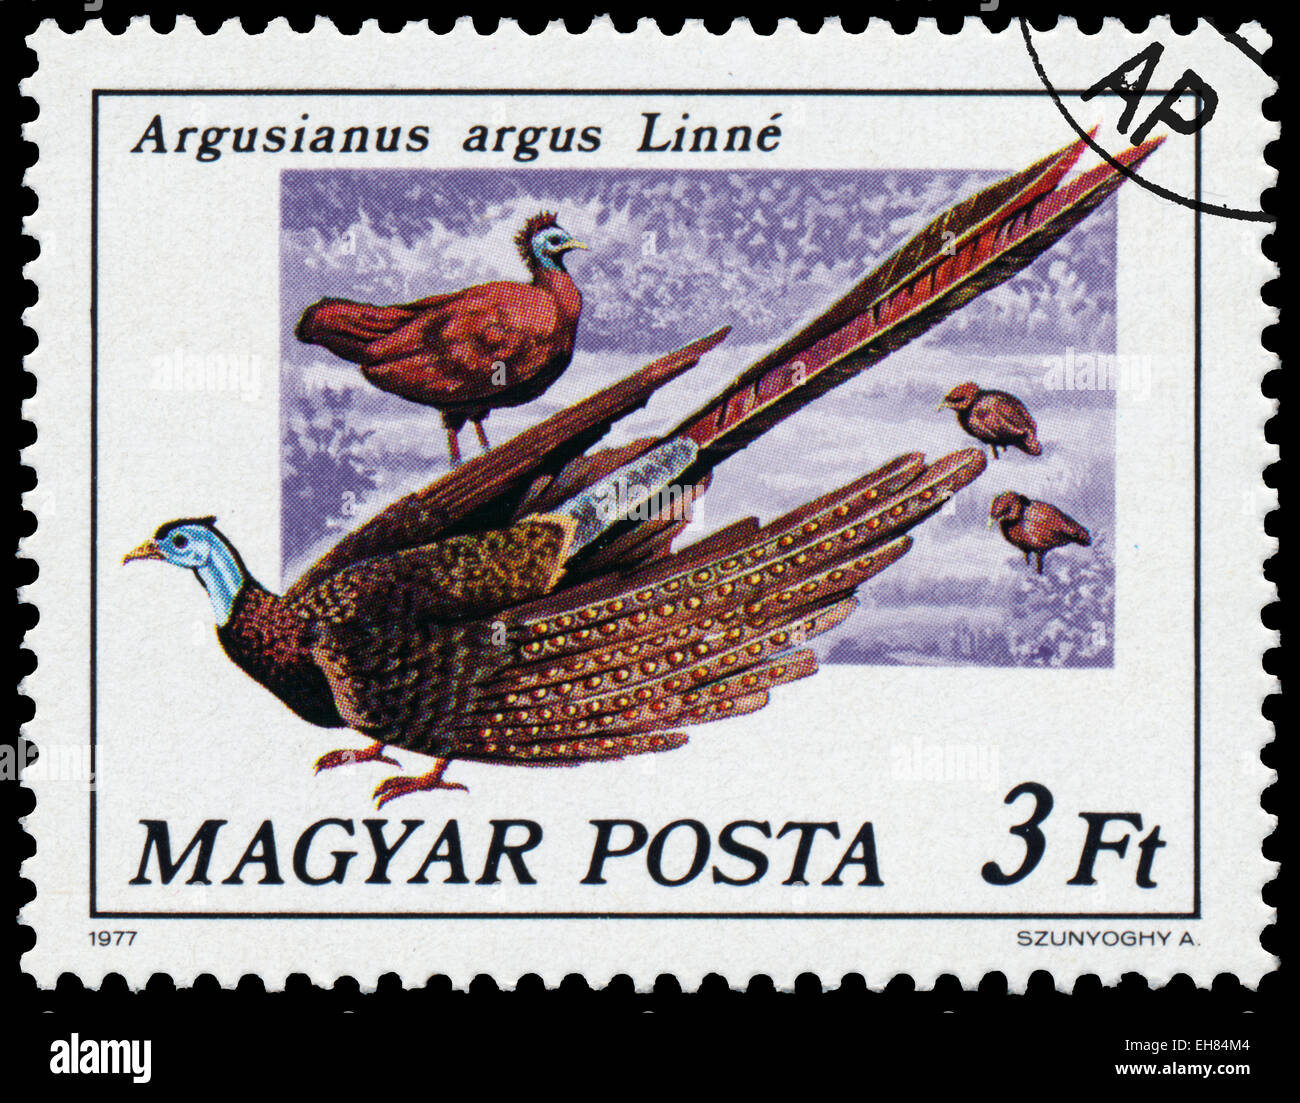 Hongrie - circa 1977 : timbres en Hongrie montre une grande Argusianus argus argus - Linne, série oiseaux paon, vers 1977 Banque D'Images